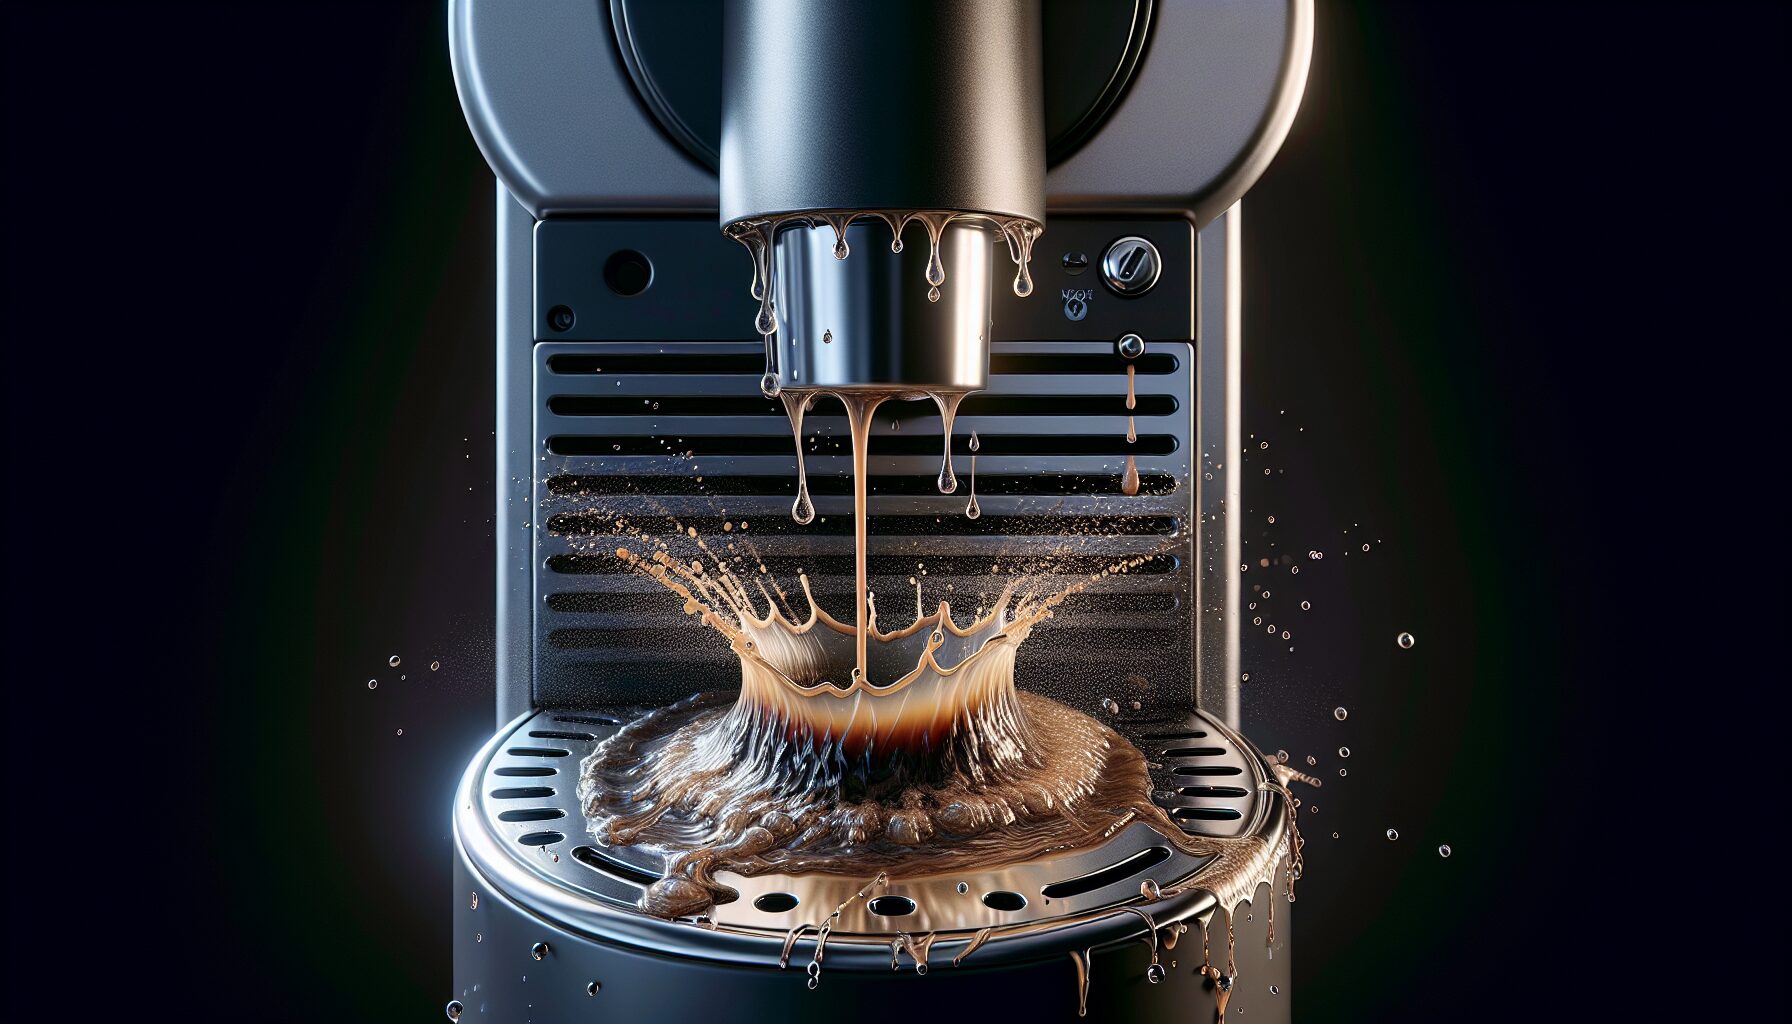 Cafetera Nespresso Pierde Agua Por Debajo